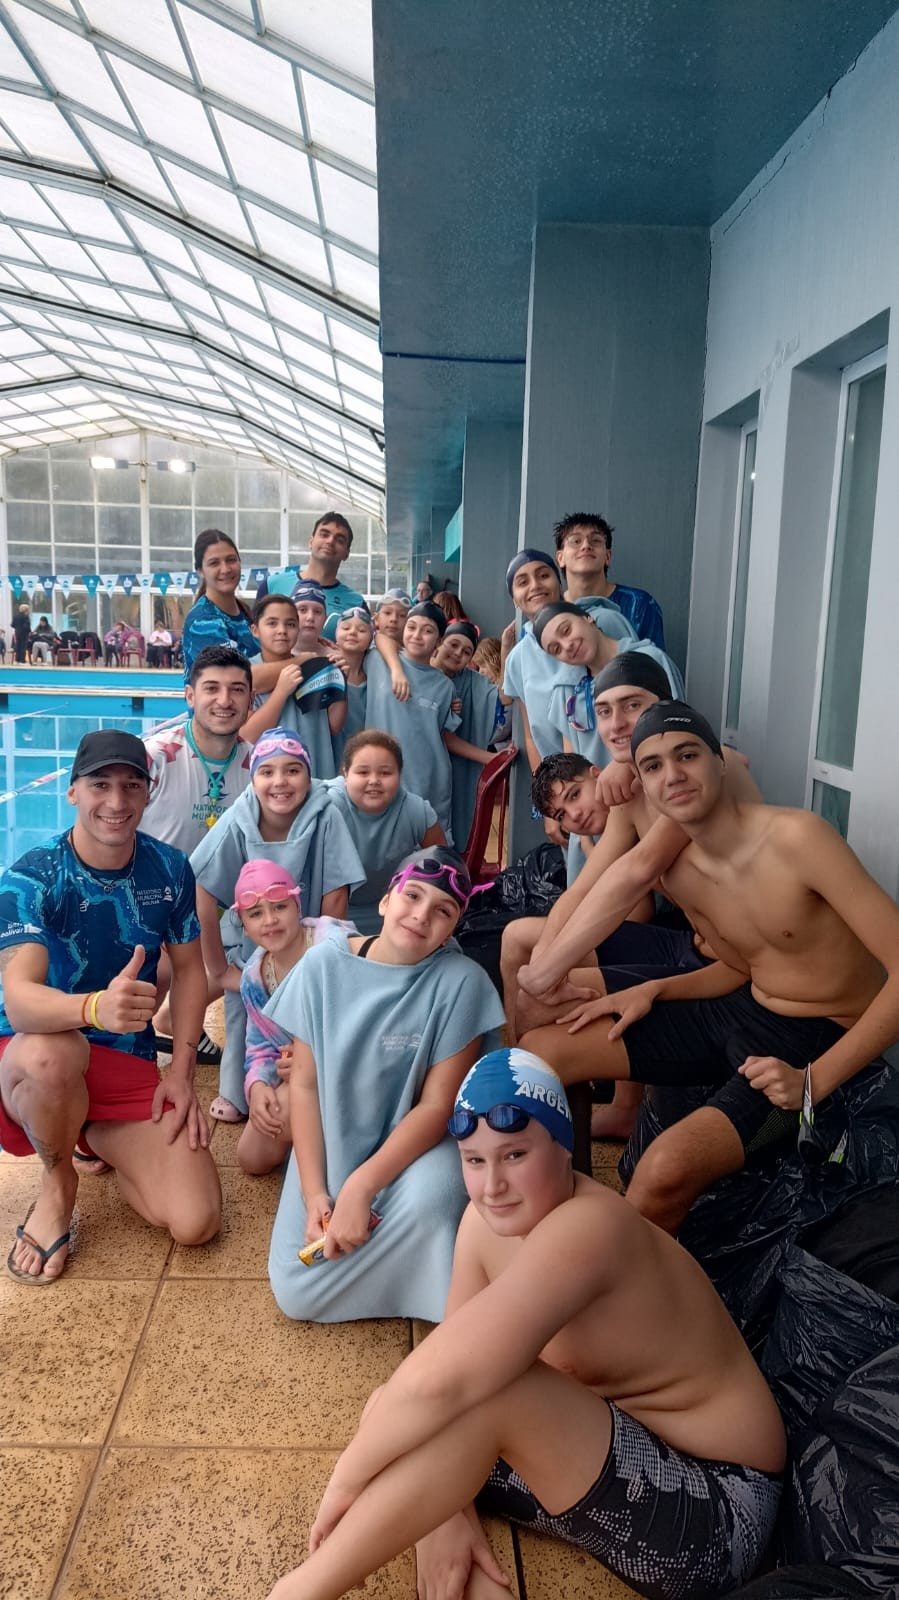 Evangelina Severini: “Éramos cinco instituciones a pleno con la natación”